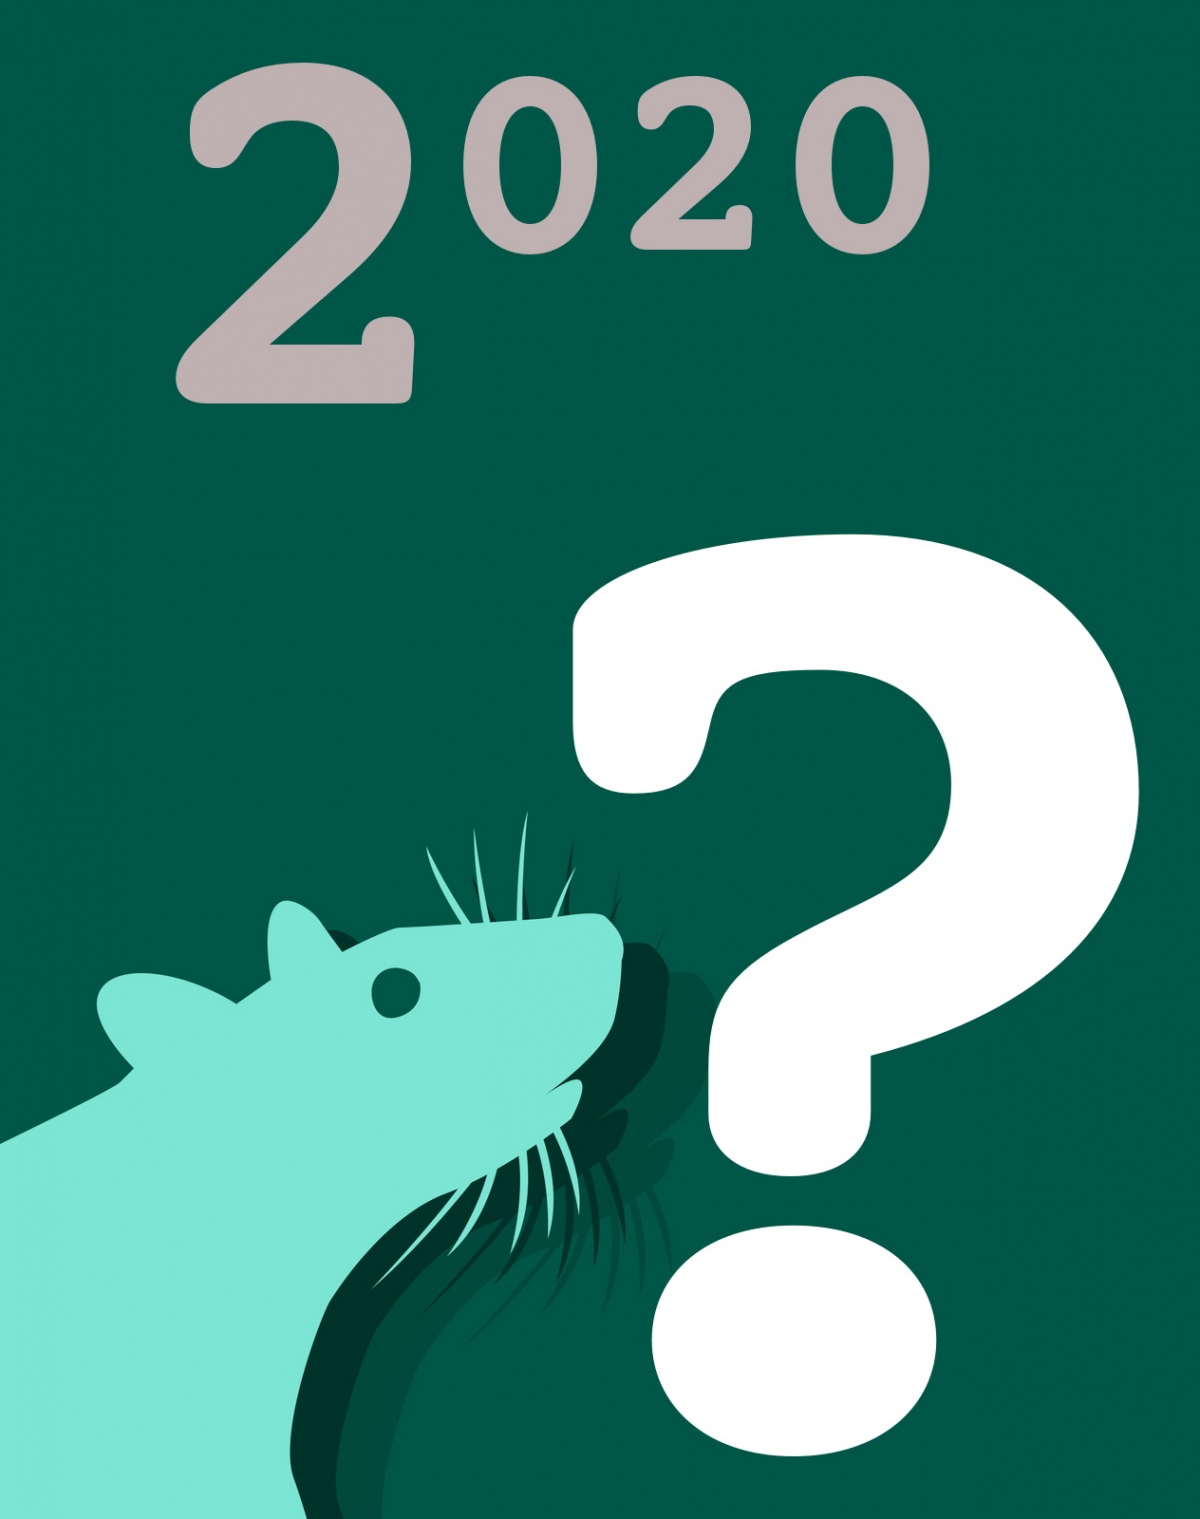 2020-й - год крысы или год Божий?